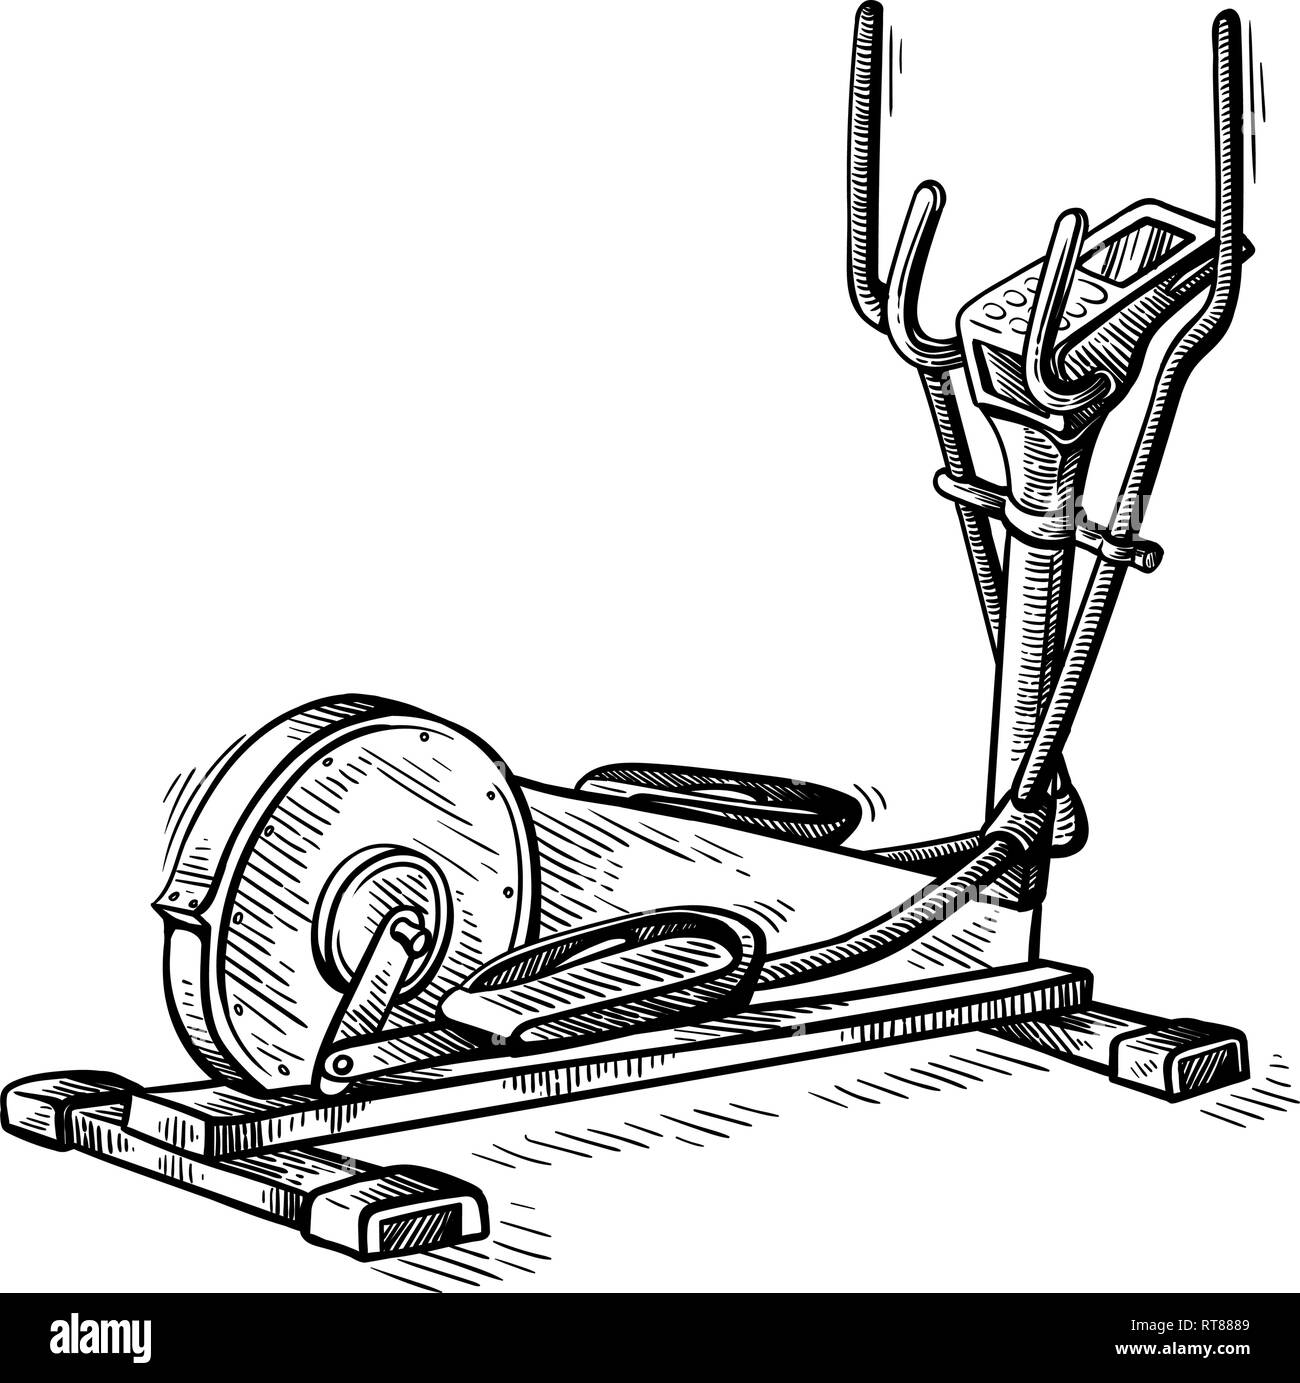 Skizze Hand gezeichnet Fitnessgeräte Maschine elliptische Vector Illustration Stock Vektor